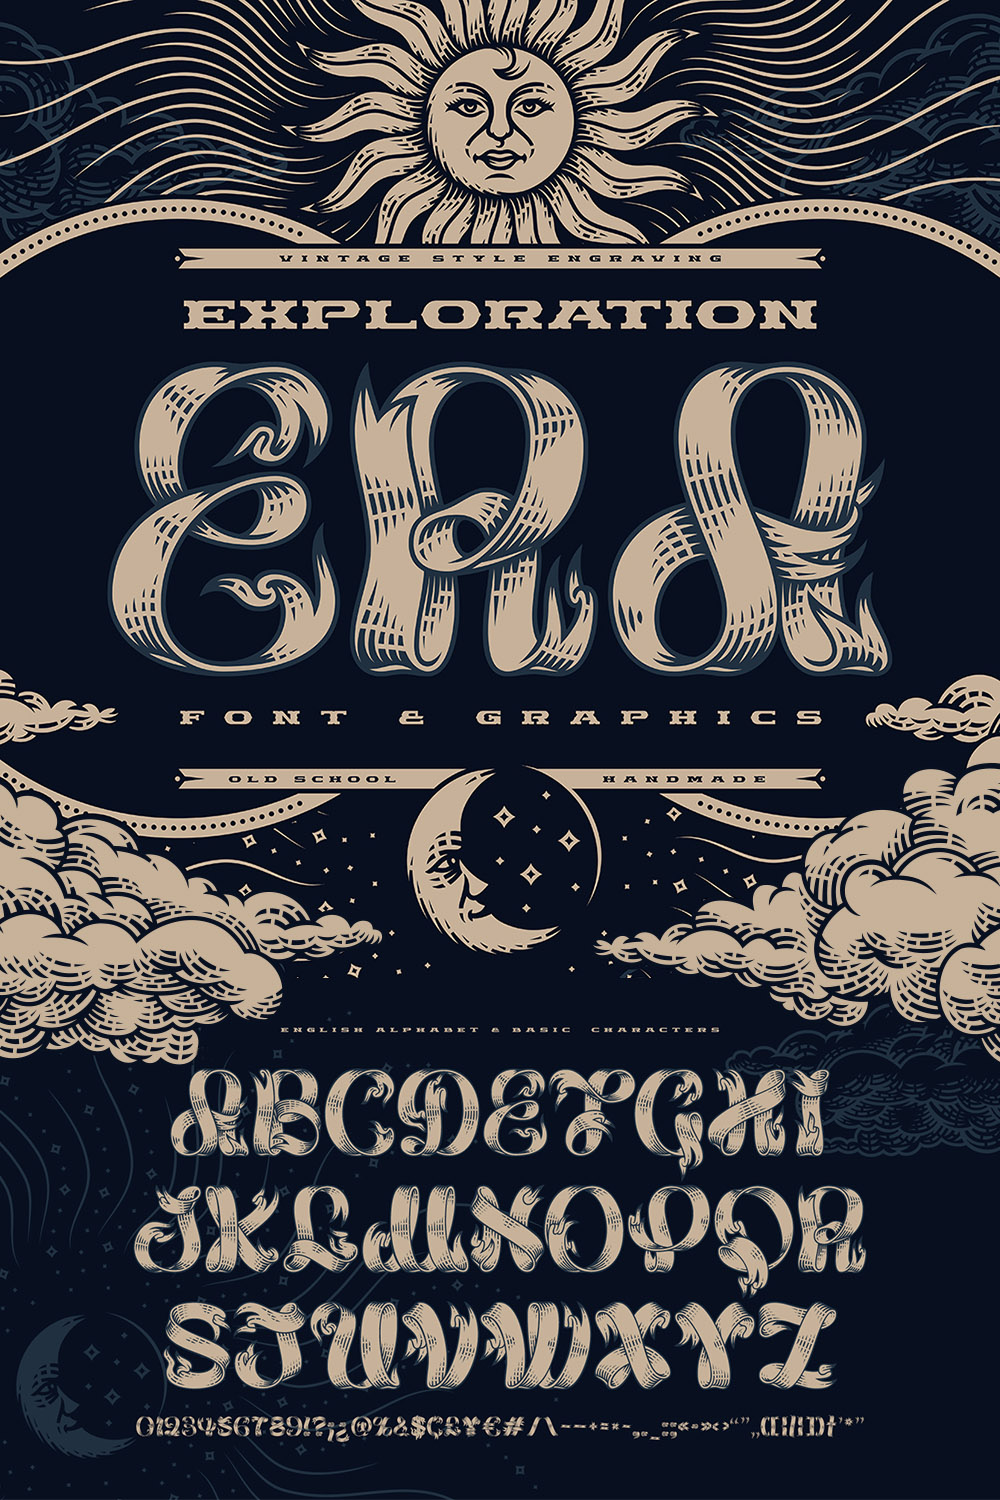 Exploration Era — Font & Graphics pinterest preview image.